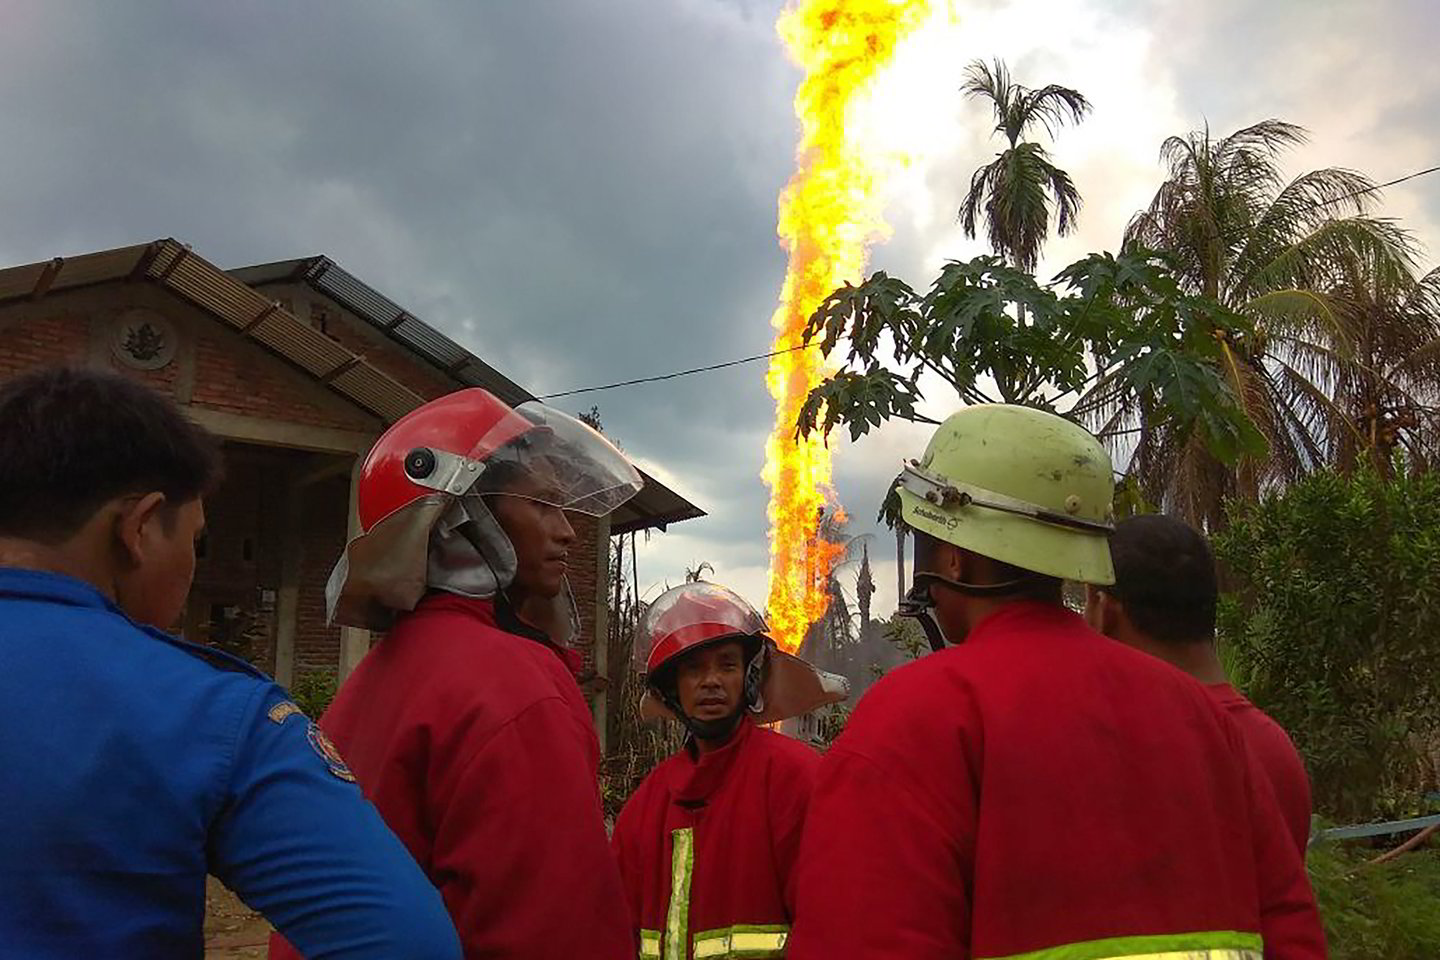  Indonezijoje mažiausiai 10 žmonių žuvo, o dar dešimtys buvo sužeisti užsiliepsnojus neteisėtai įrengtam naftos gręžiniui Ačeho provincijoje, trečiadienį pranešė pareigūnai.<br> AFP/Scanpix nuotr.